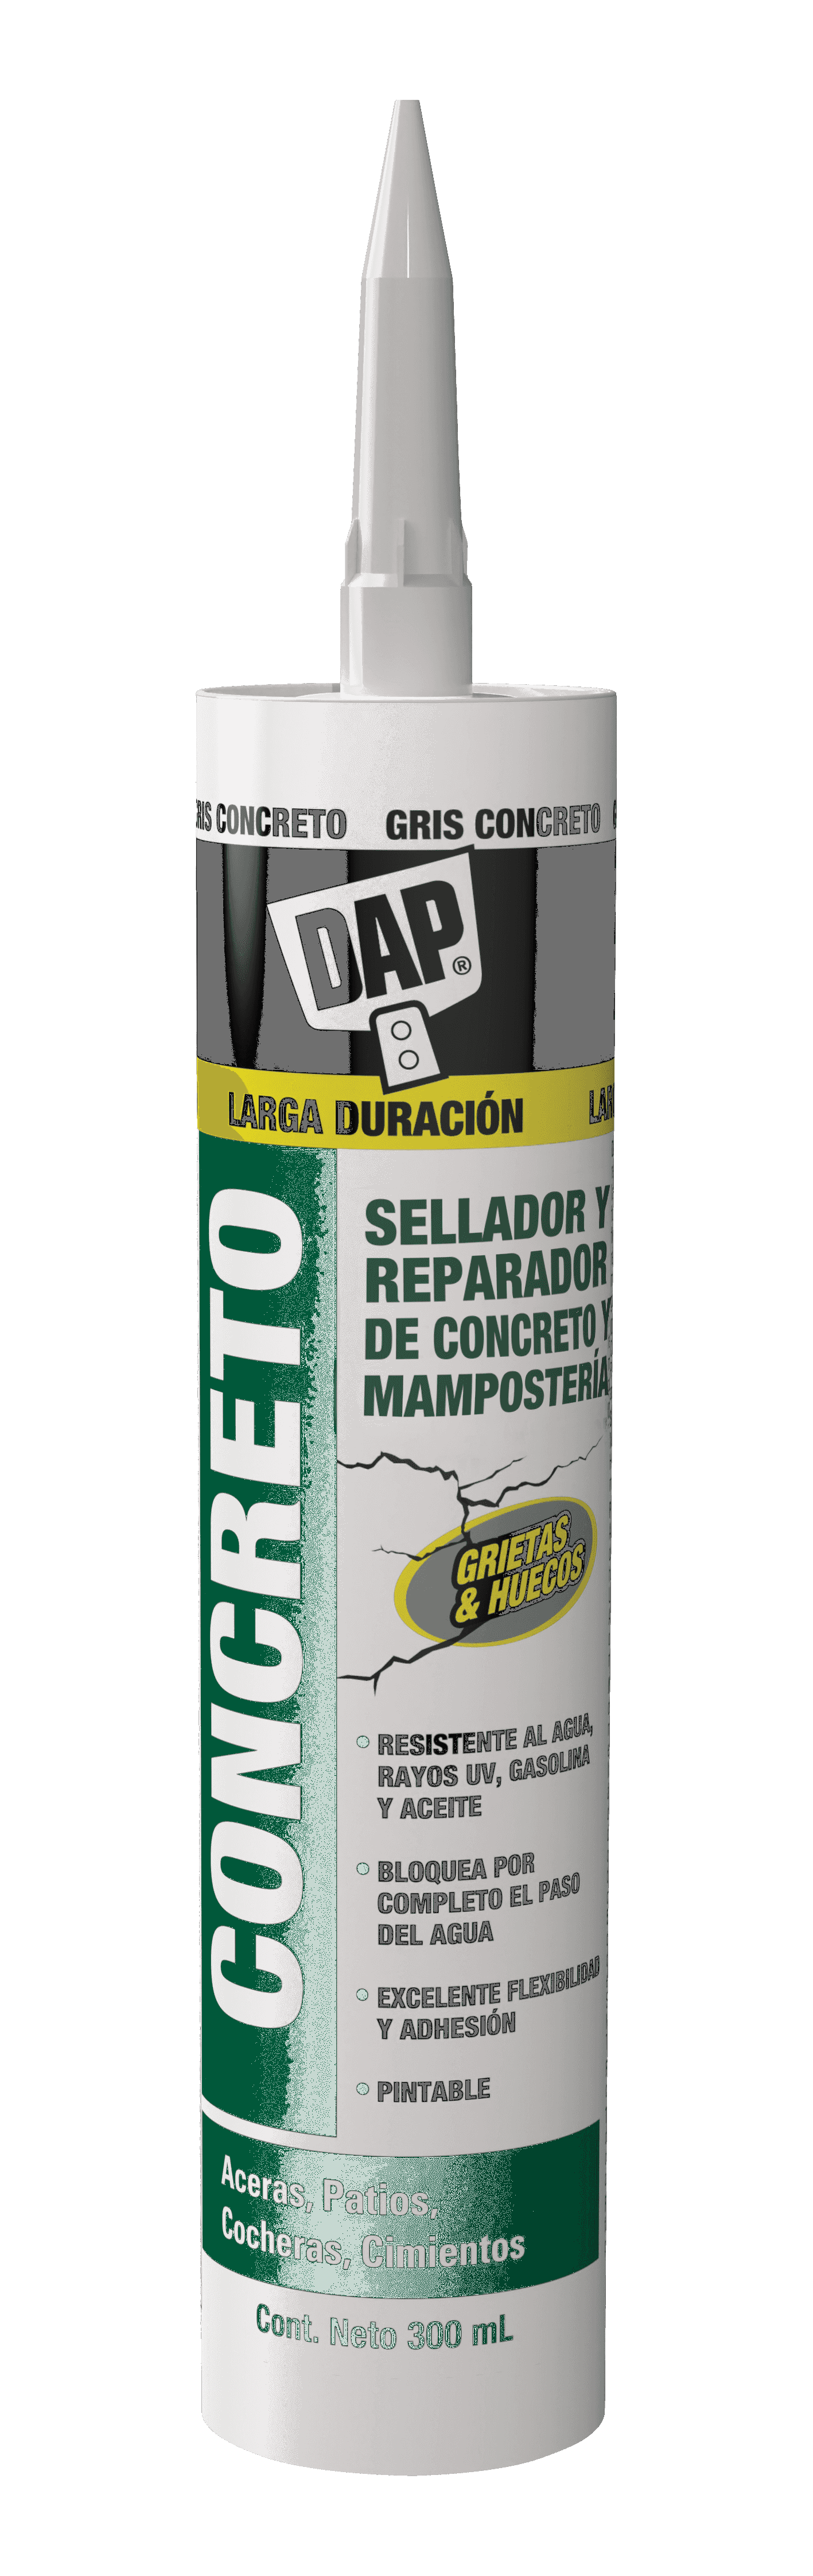 Foto del producto DAP® CONCRETO Sellador y Reparador de Concreto y Mampostería